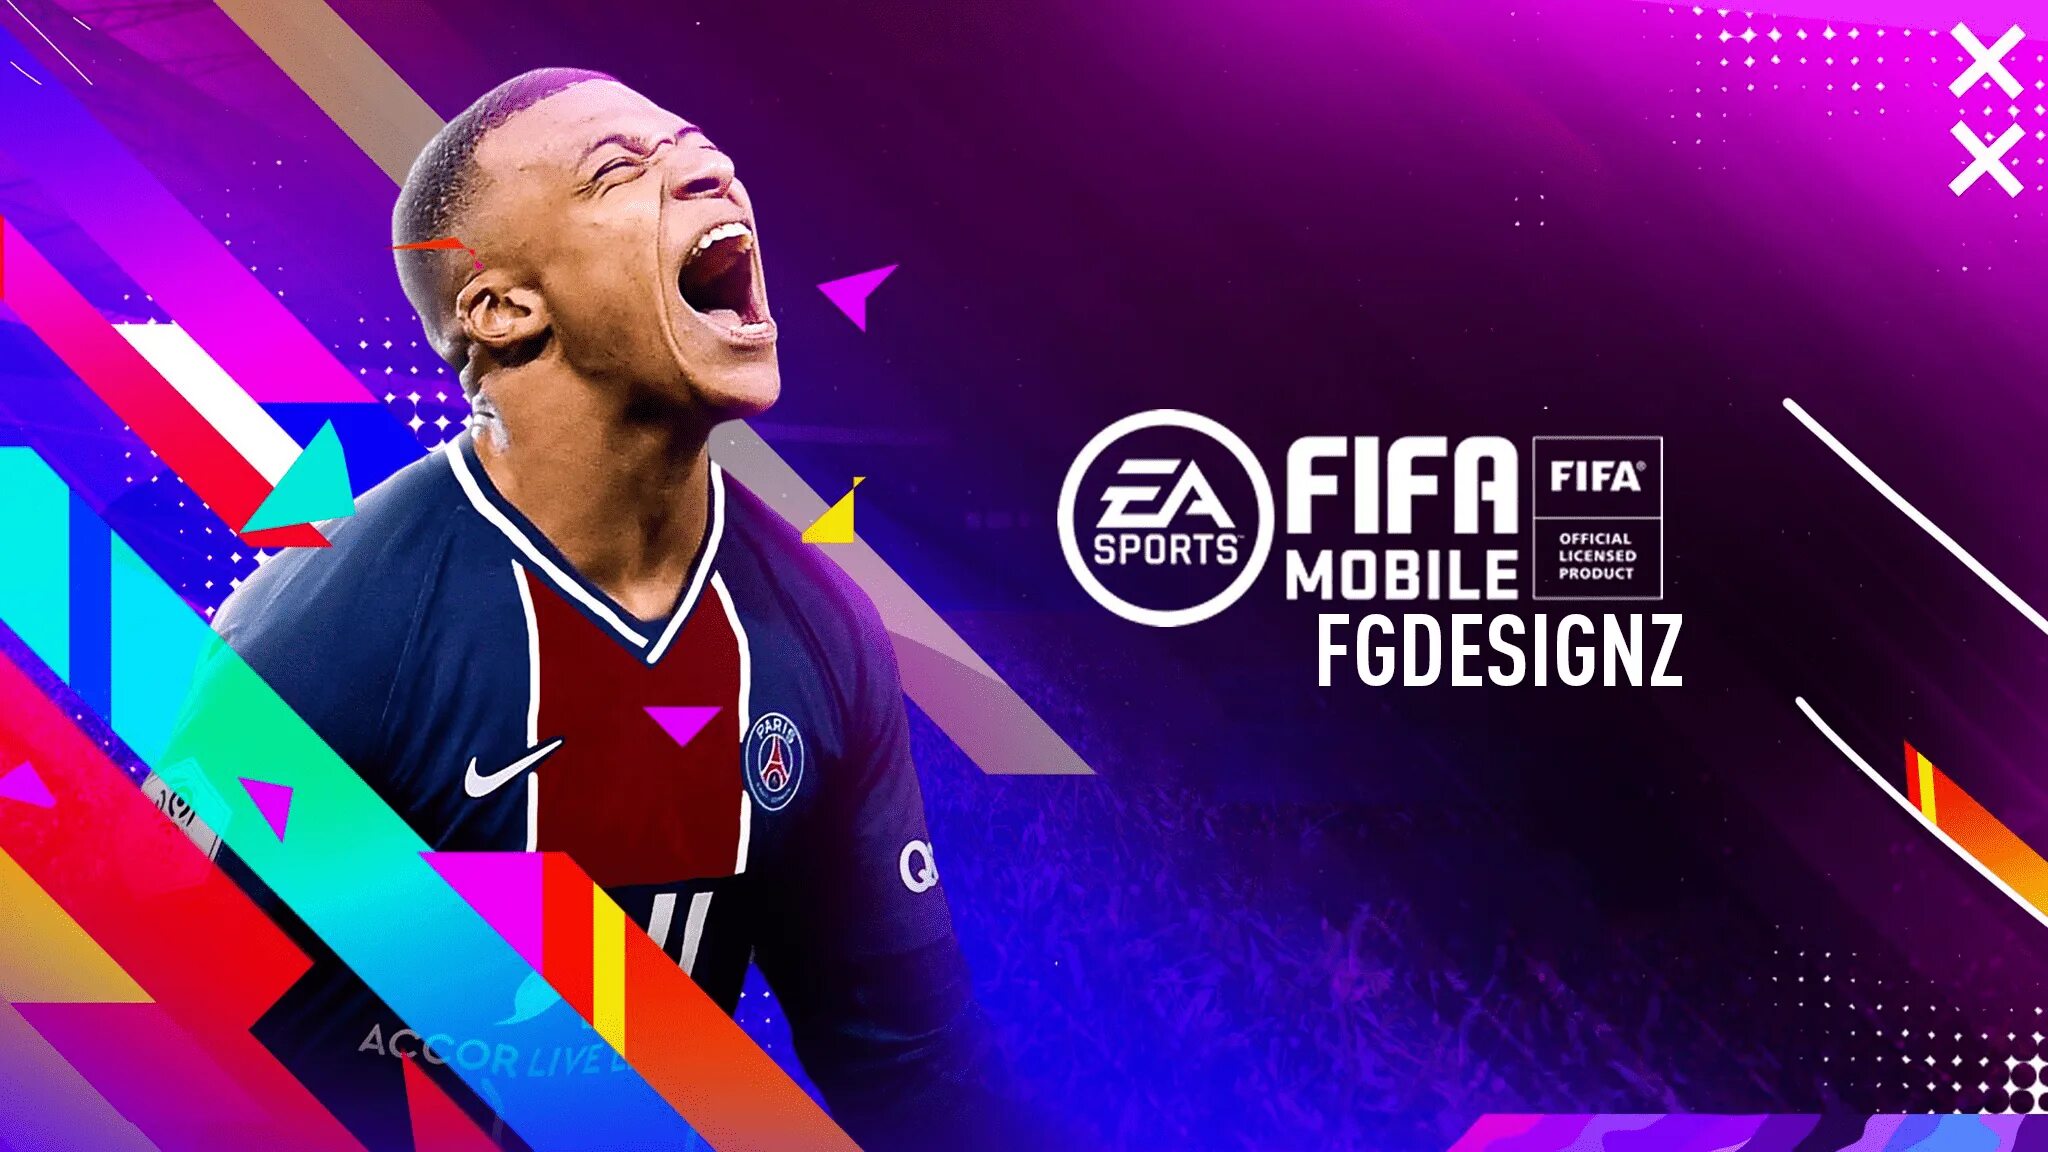 Fifa mobile новый. ФИФА мобайл 21. FIFA mobile 2021. FIFA mobile фото. FIFA mobile обложка.